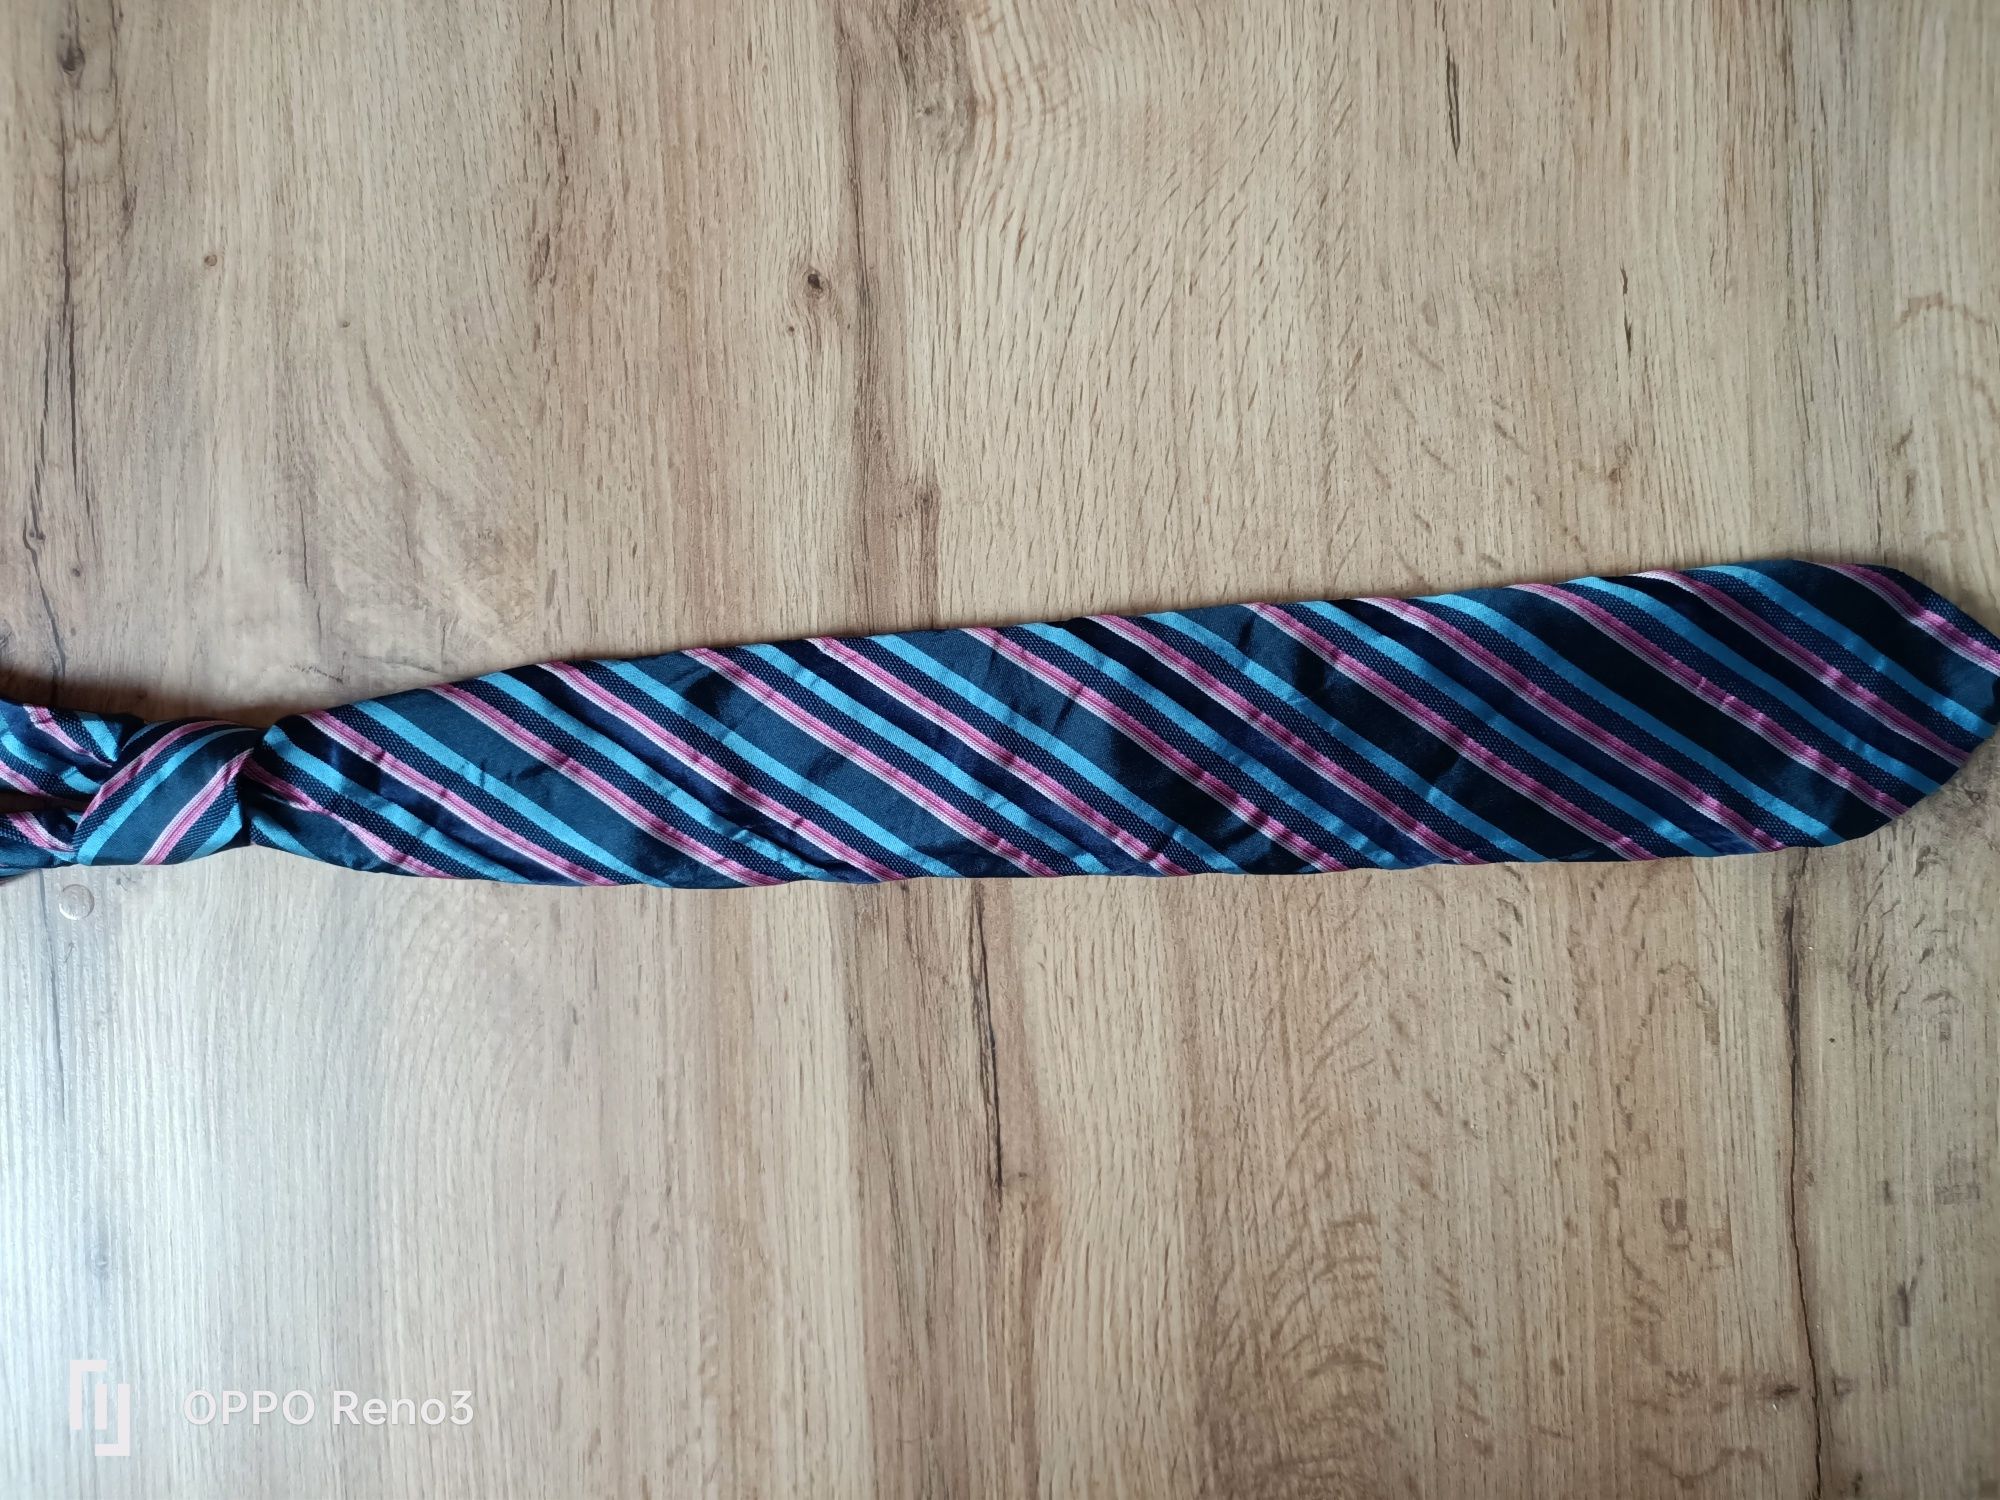 Markowy krawat w paski na skos Hugo Boss elegancki męski